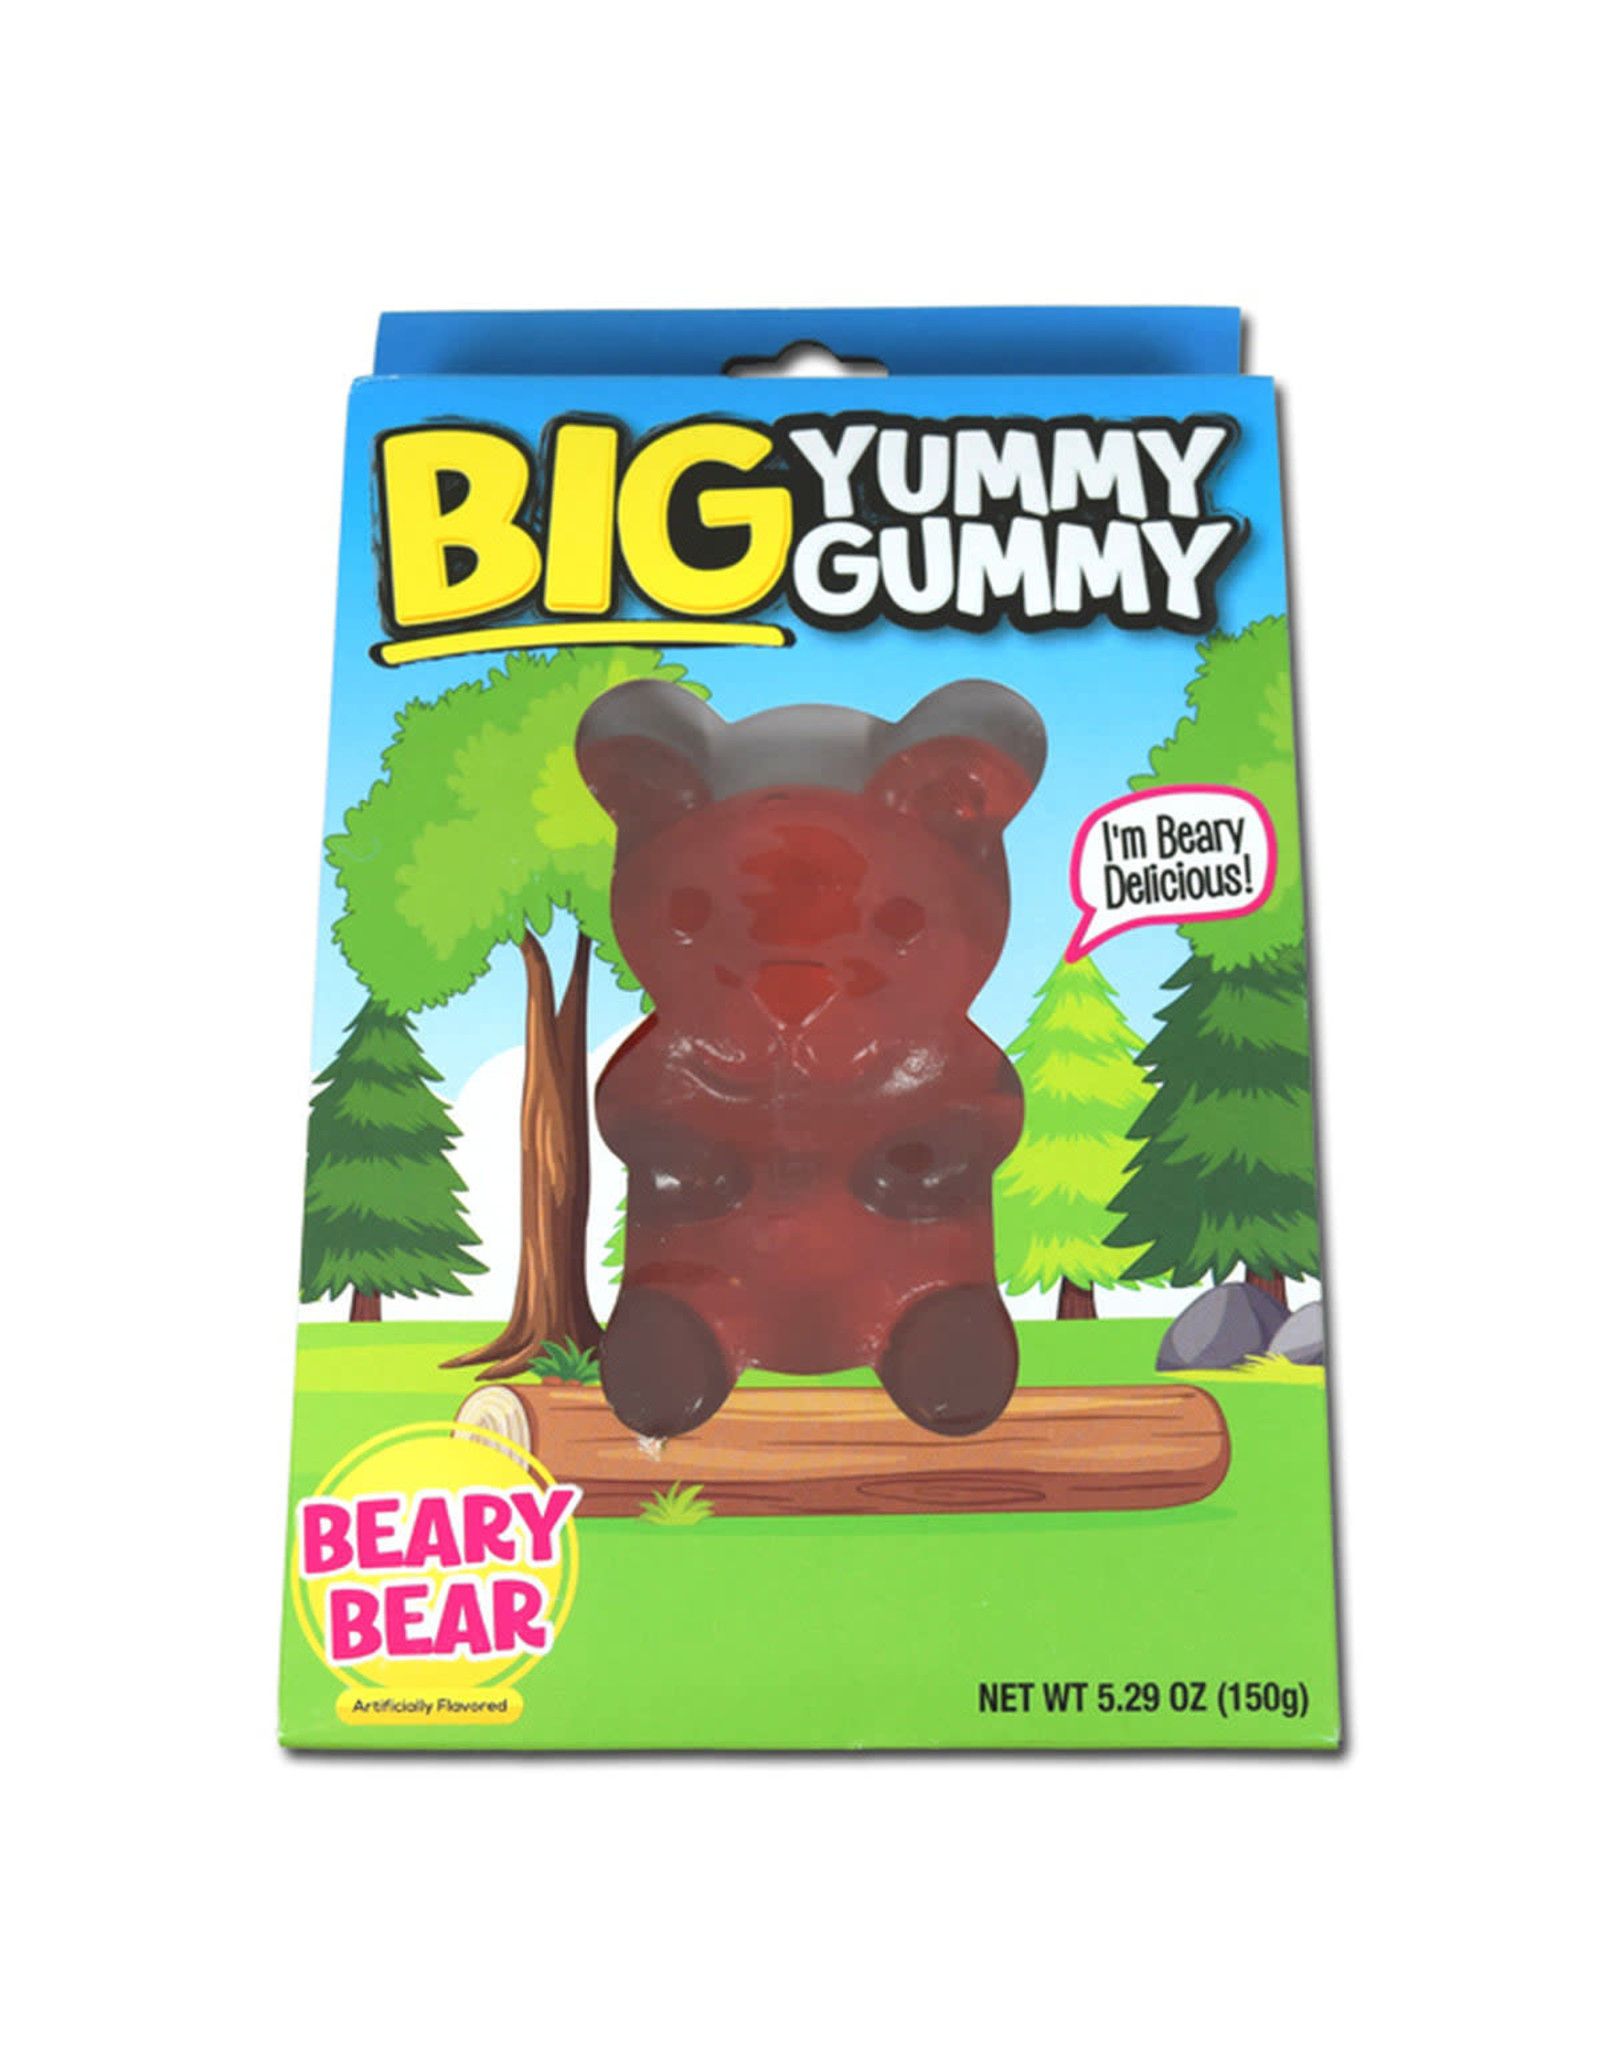 Big Yummy Gummy Beary Bear